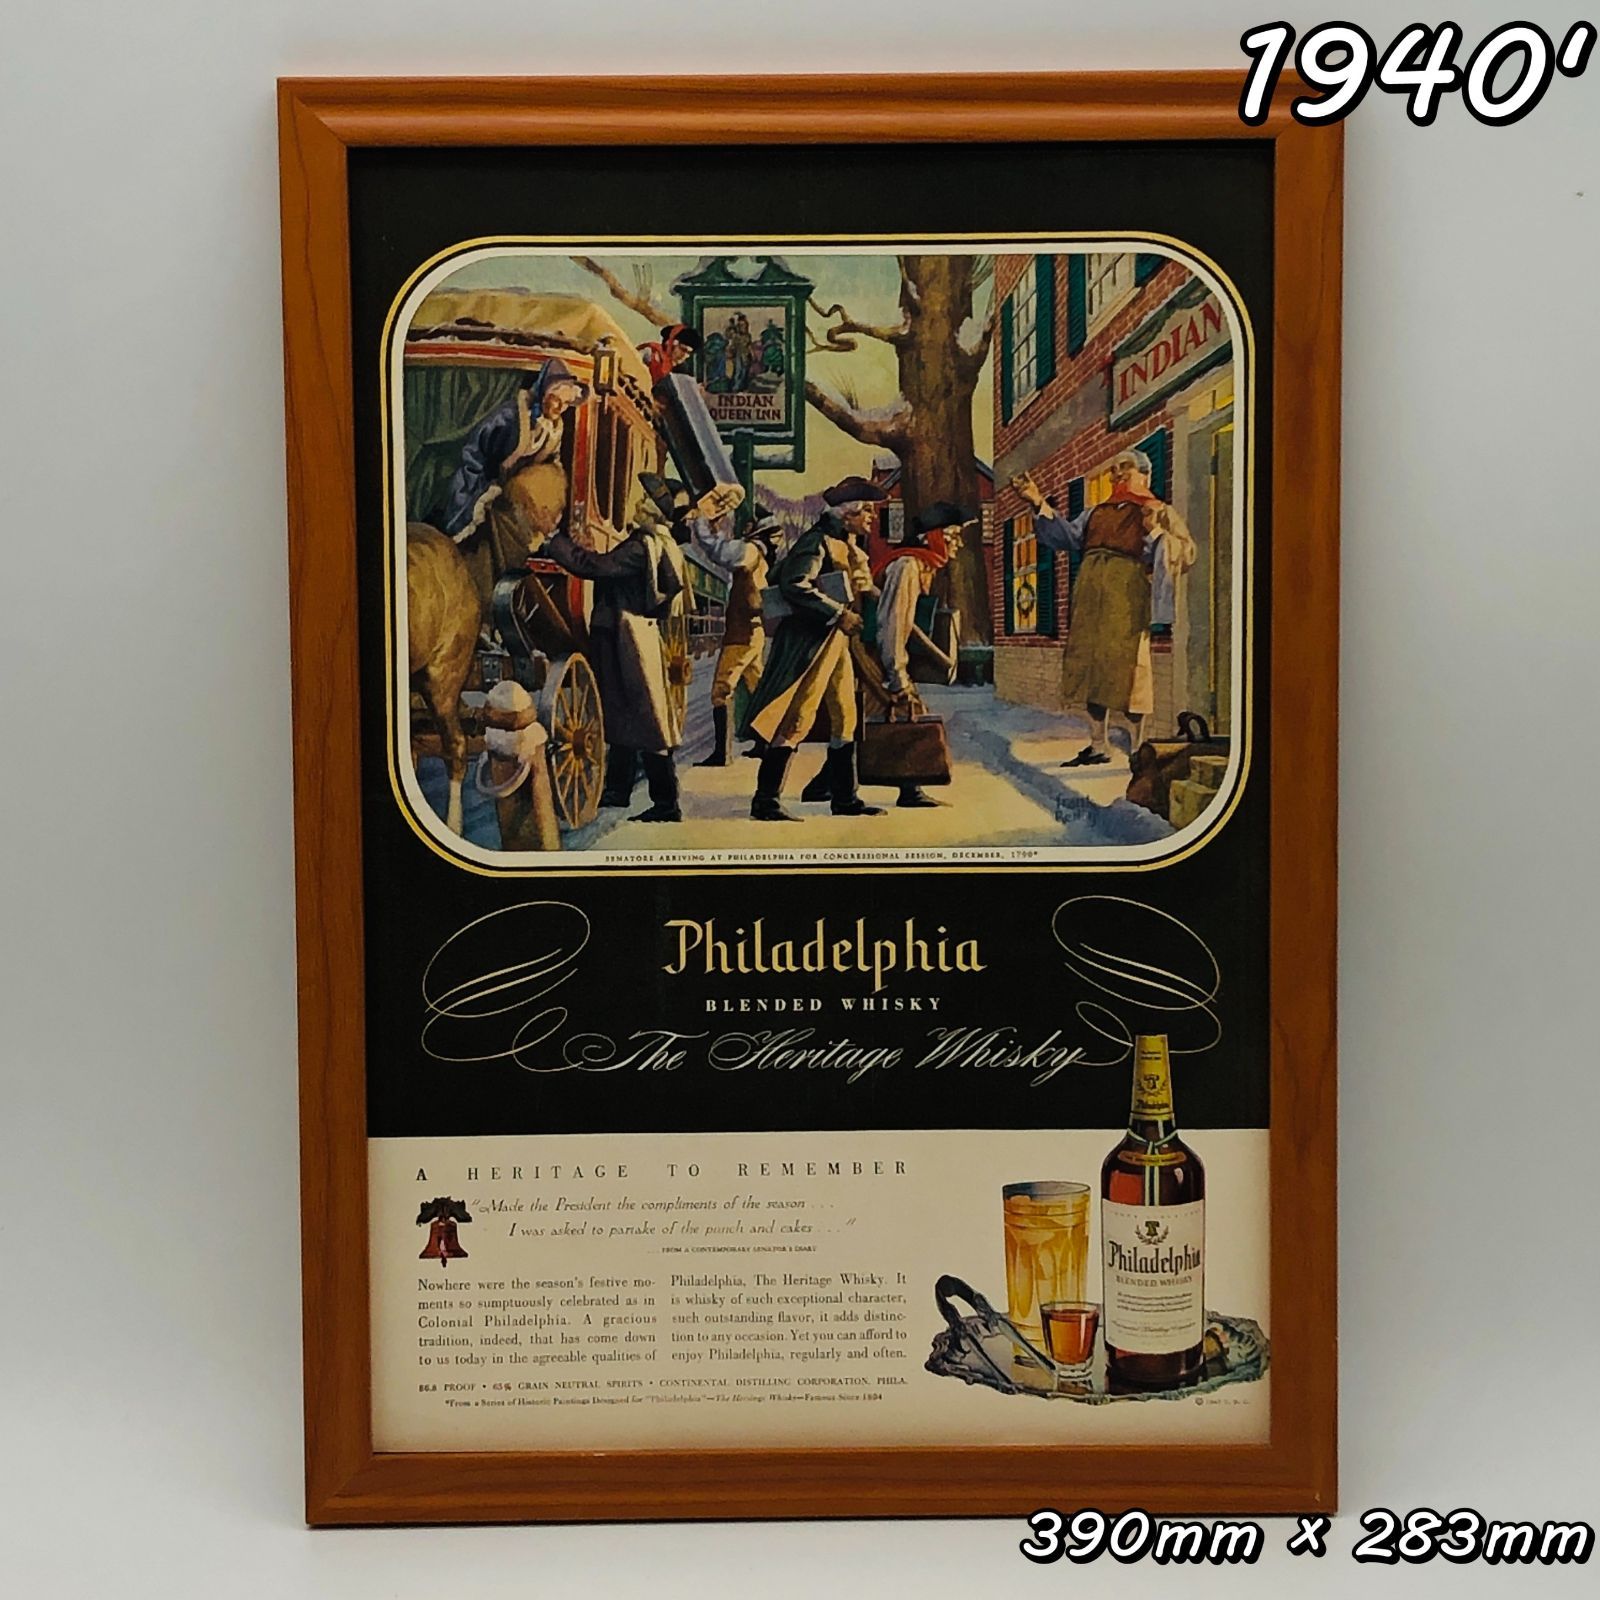 ■即決◆1948年(昭和23年) Philadelphia フィラデルフィア ウイスキー【B4-6378】アメリカ ビンテージ雑誌広告【B4額装品】当時物 ★同梱可